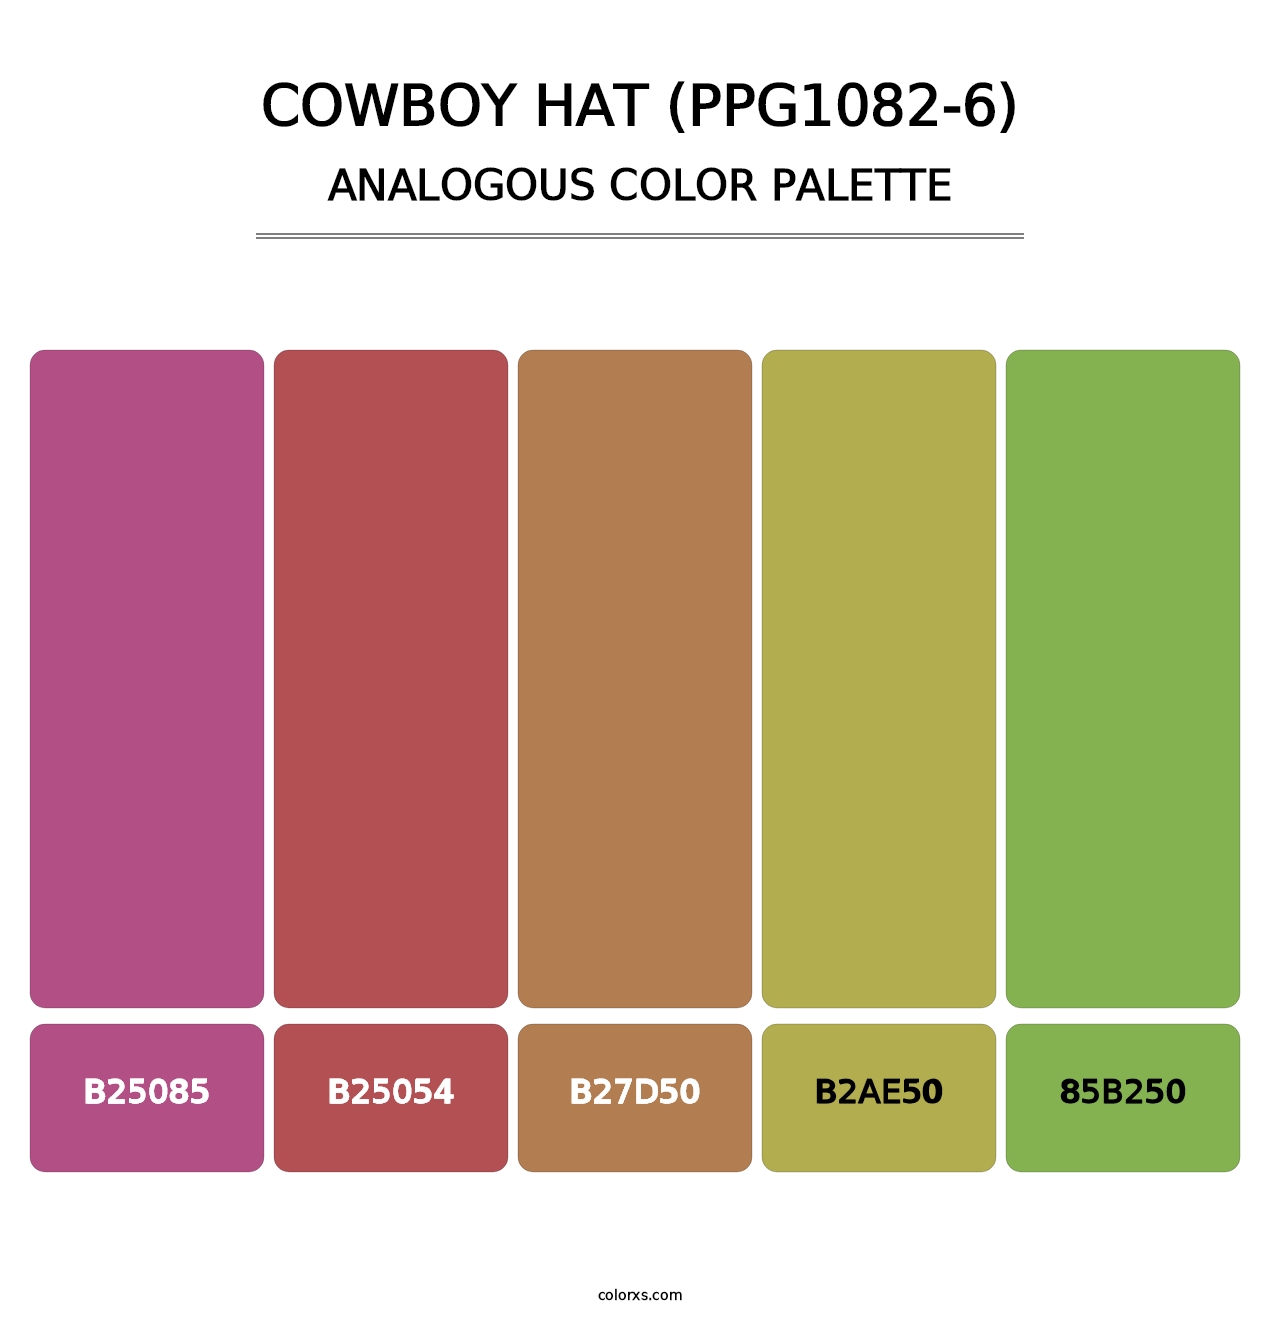 Cowboy Hat (PPG1082-6) - Analogous Color Palette